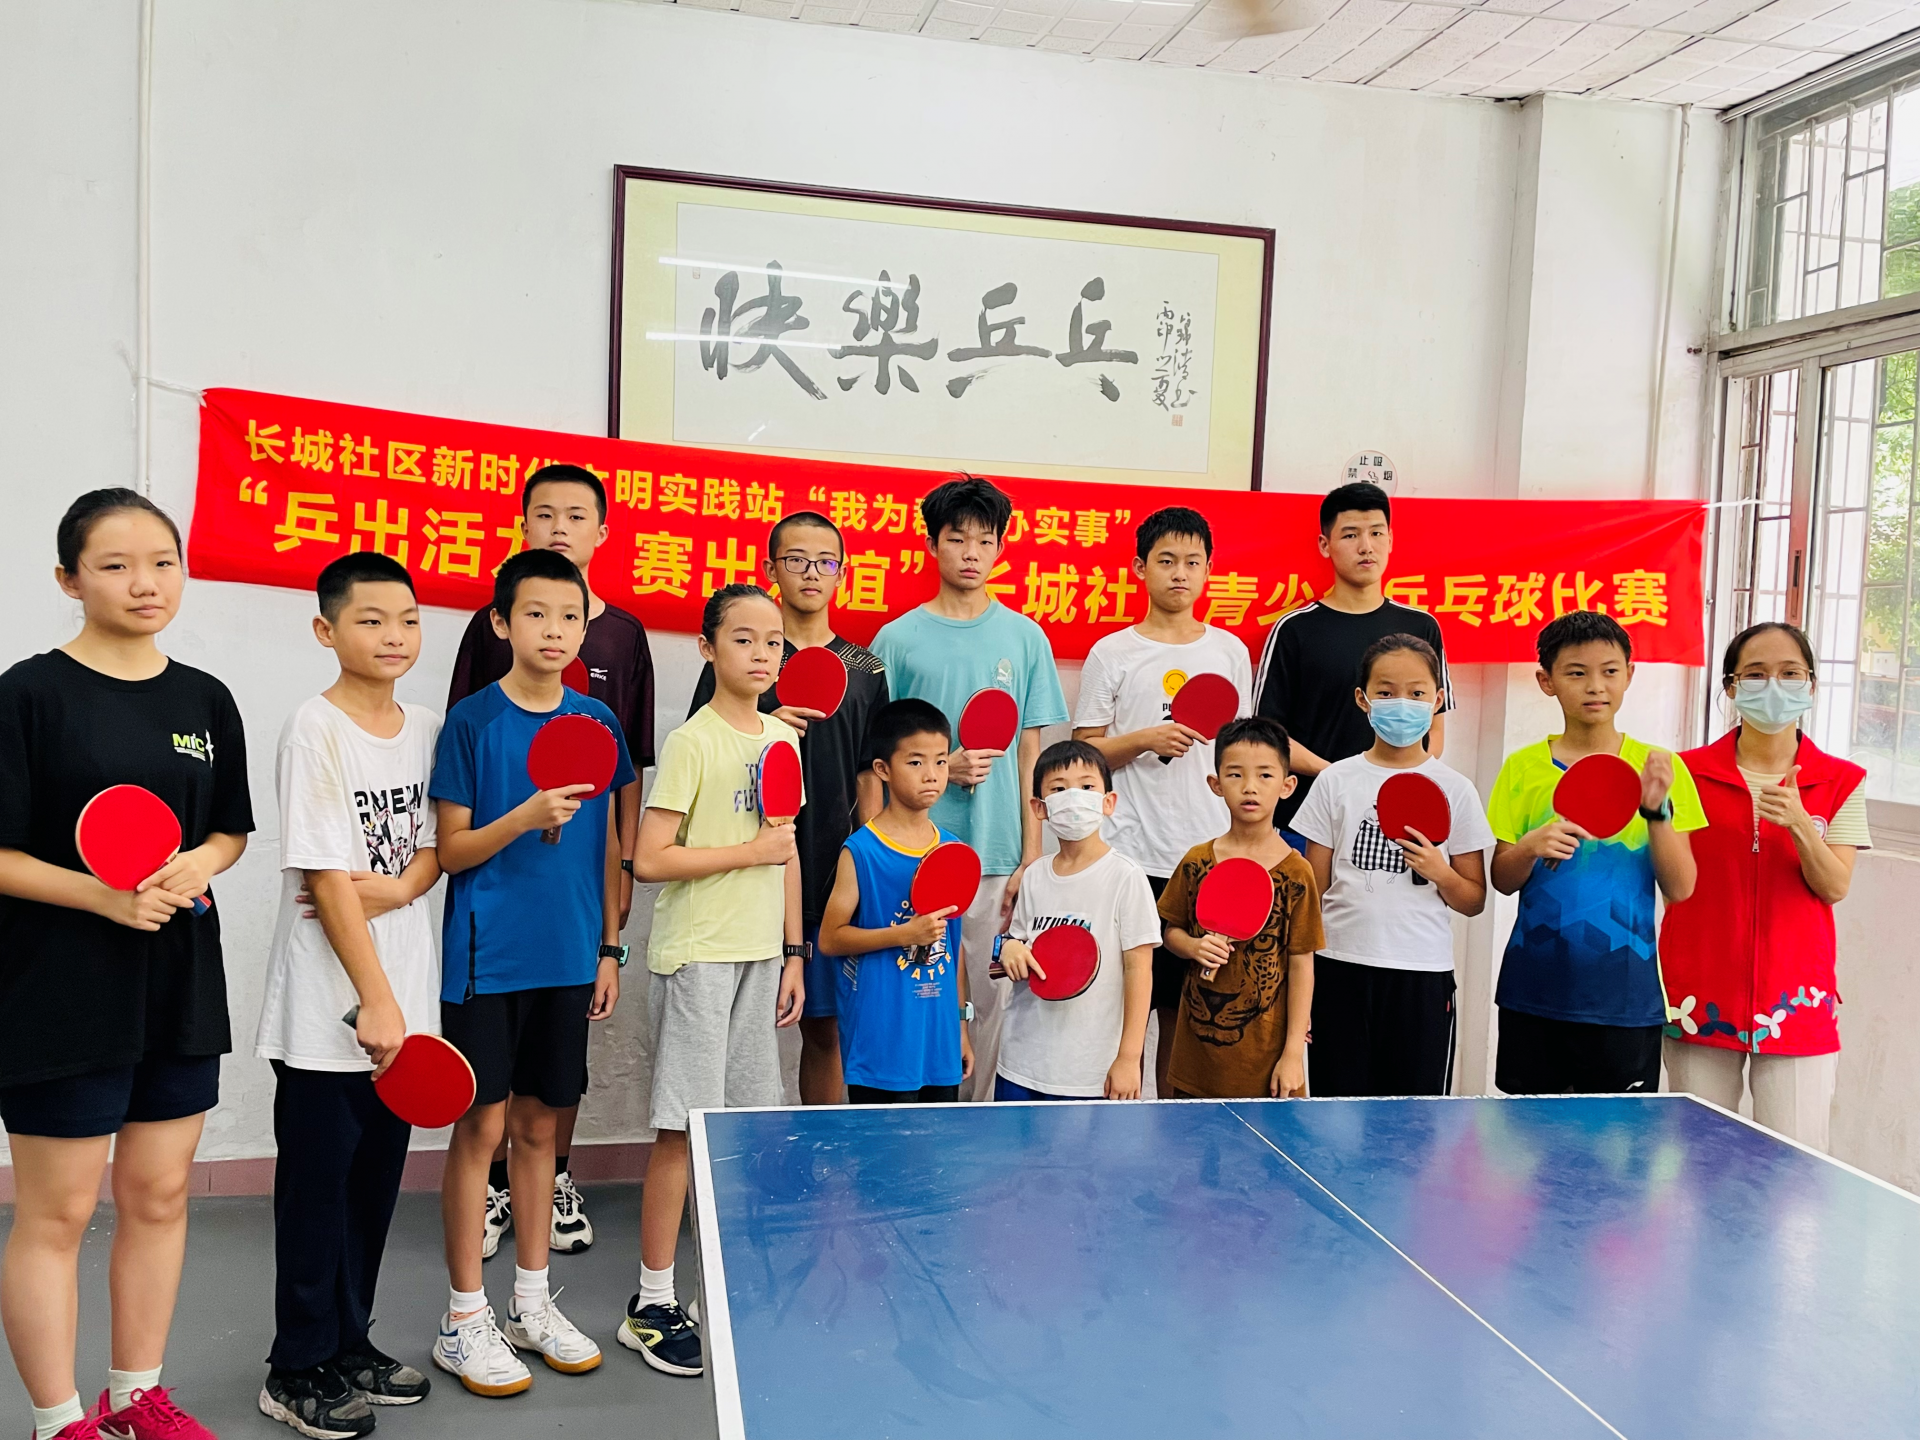  “乒出活力，赛出友谊”长城社区新时代文明实践站举办青少年乒乓球比赛  